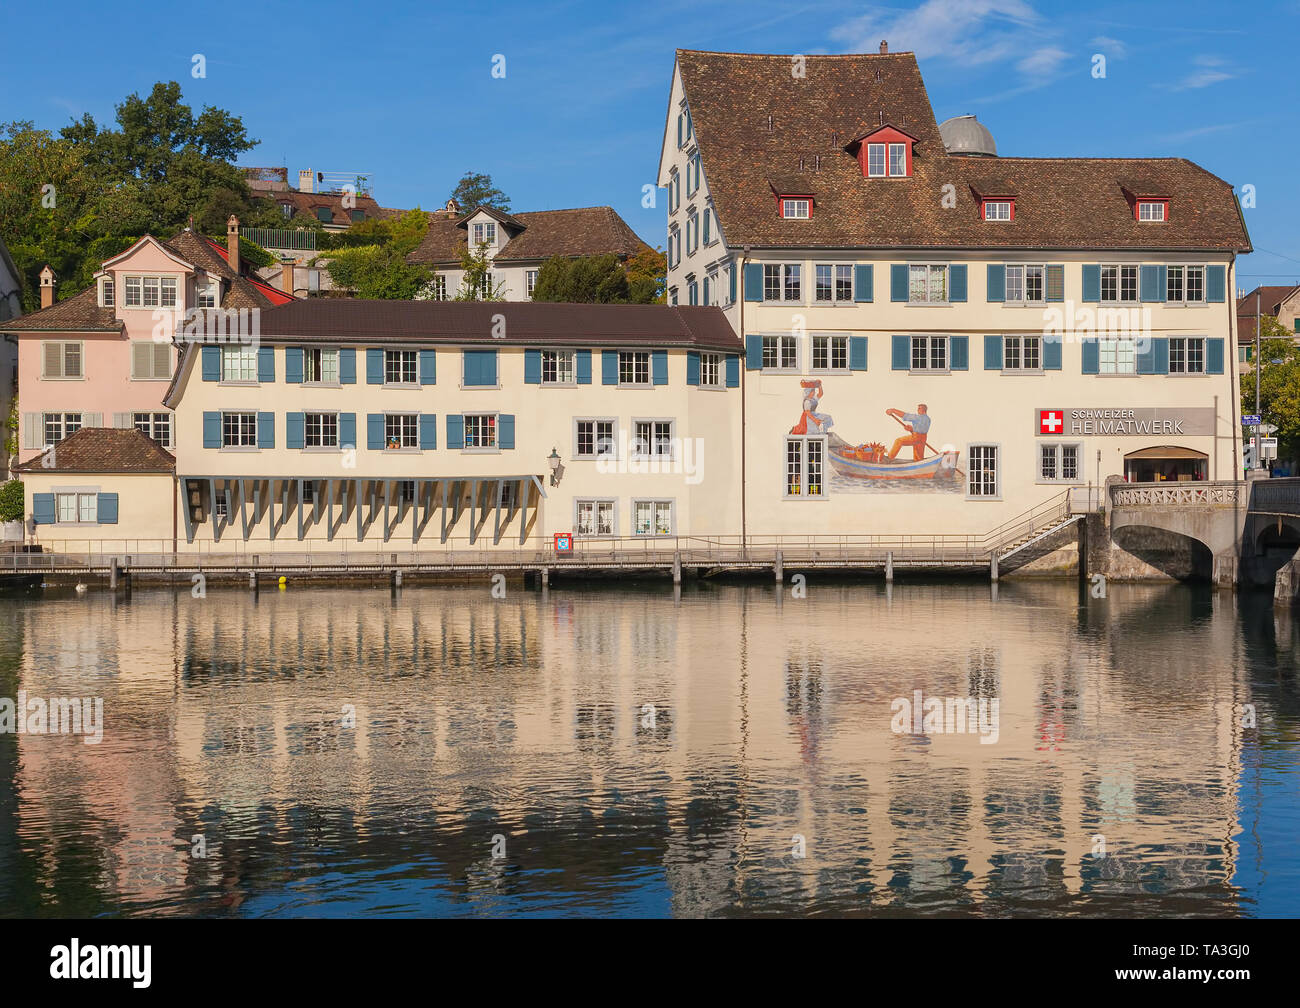 Gli edifici del centro storico quartiere Schipfe nella città di Zurigo, Svizzera Foto Stock